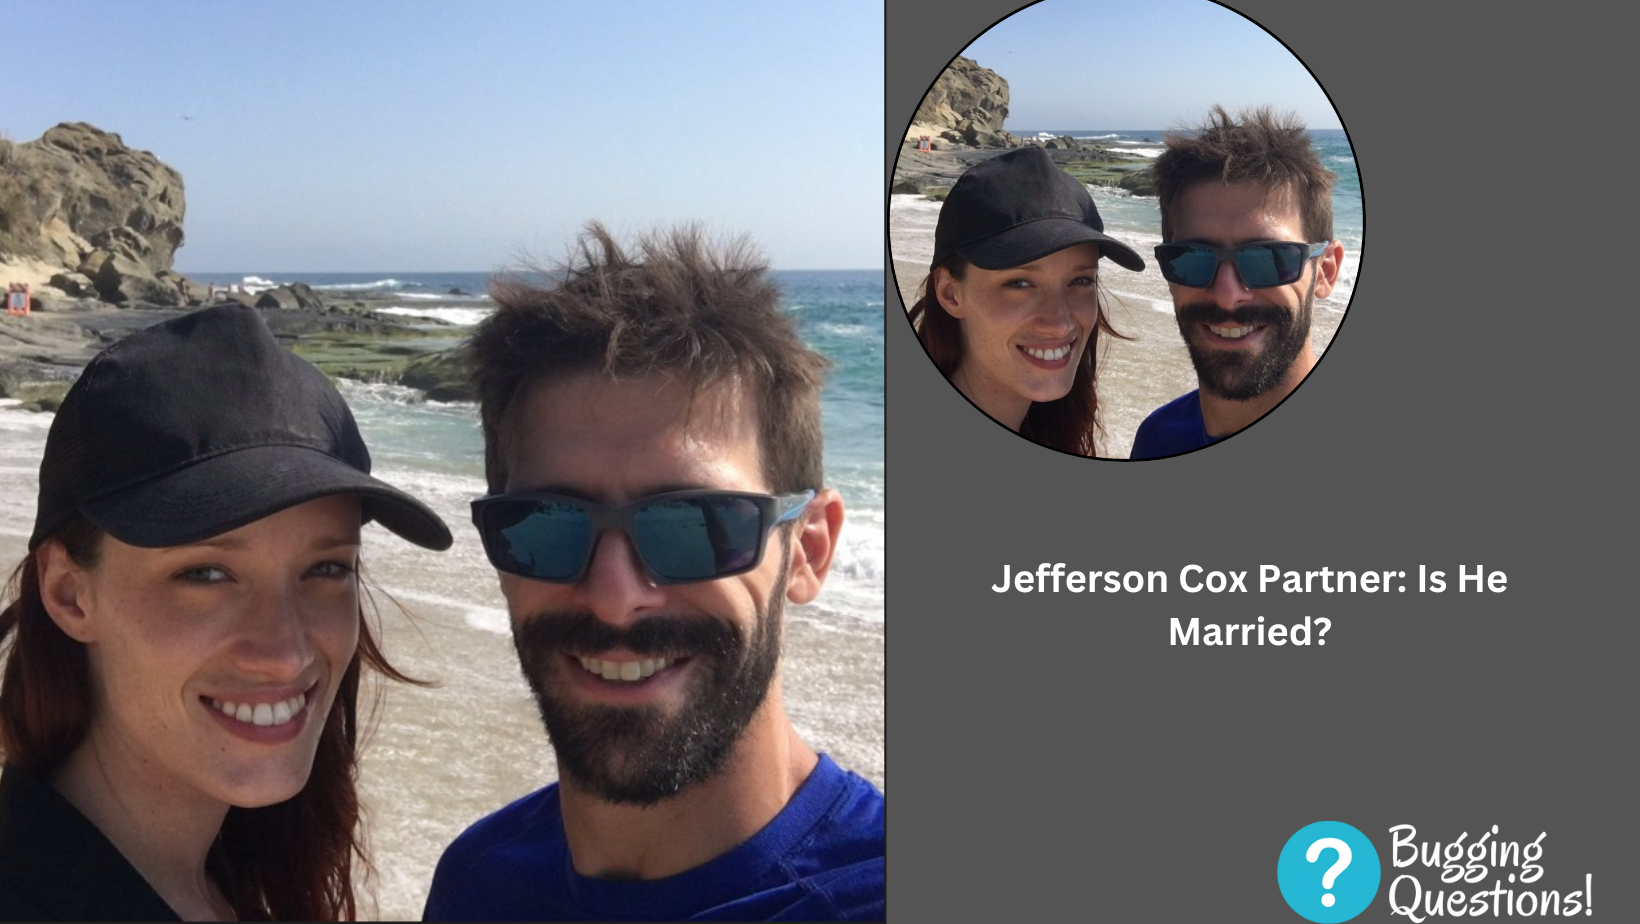 Jefferson Cox Partner: Is He Married?